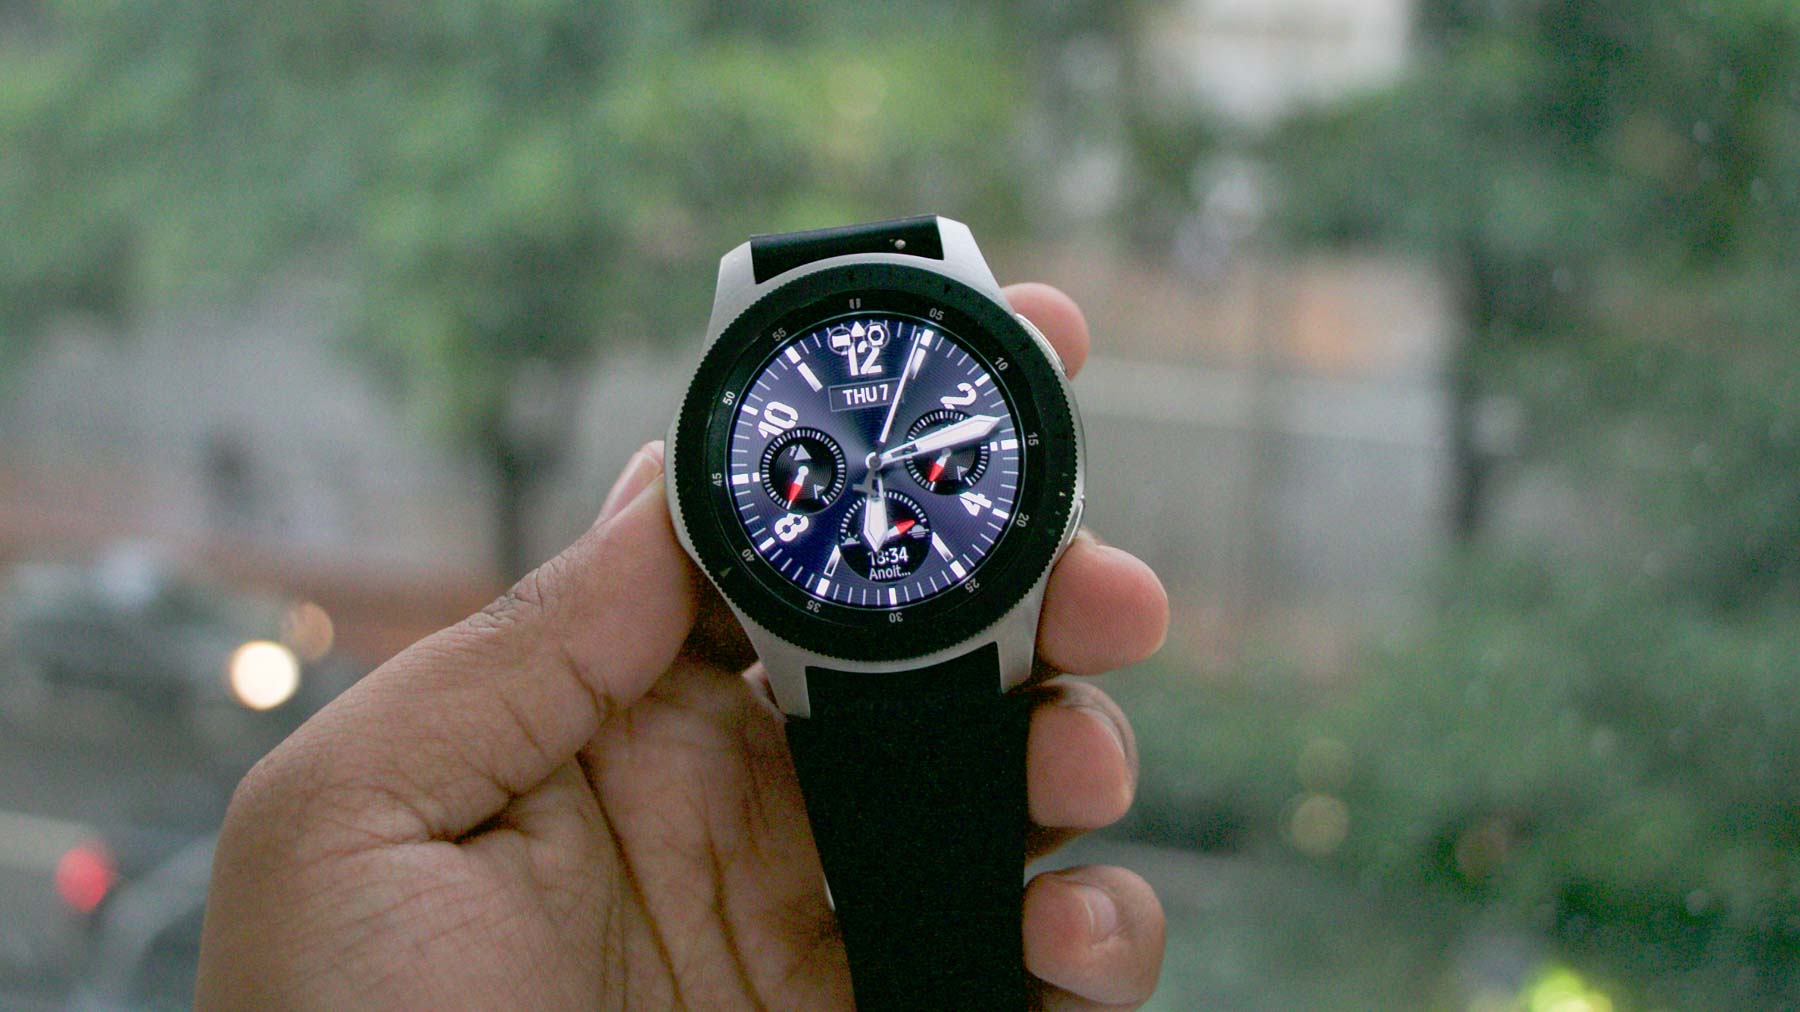 Relógio Galaxy Watch